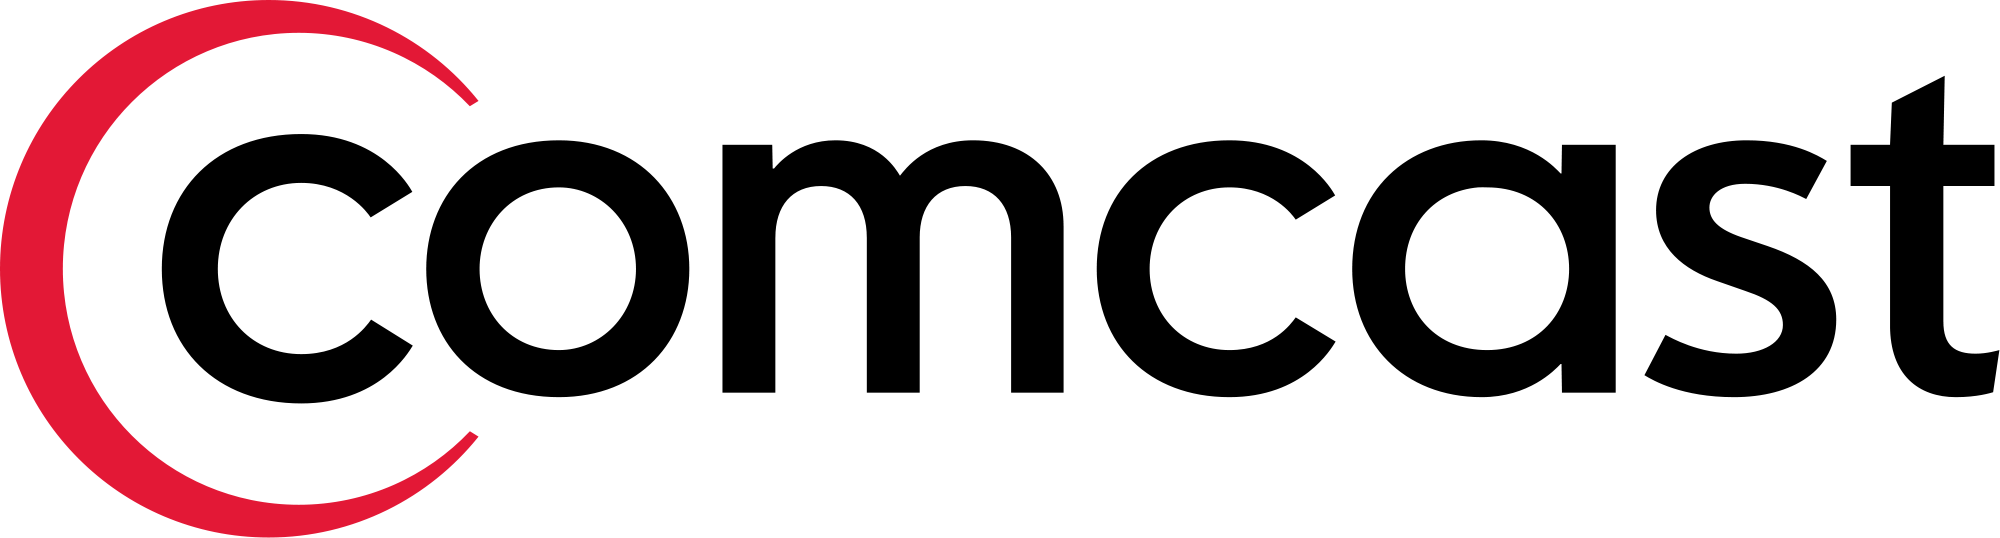 comcast png logo #4315